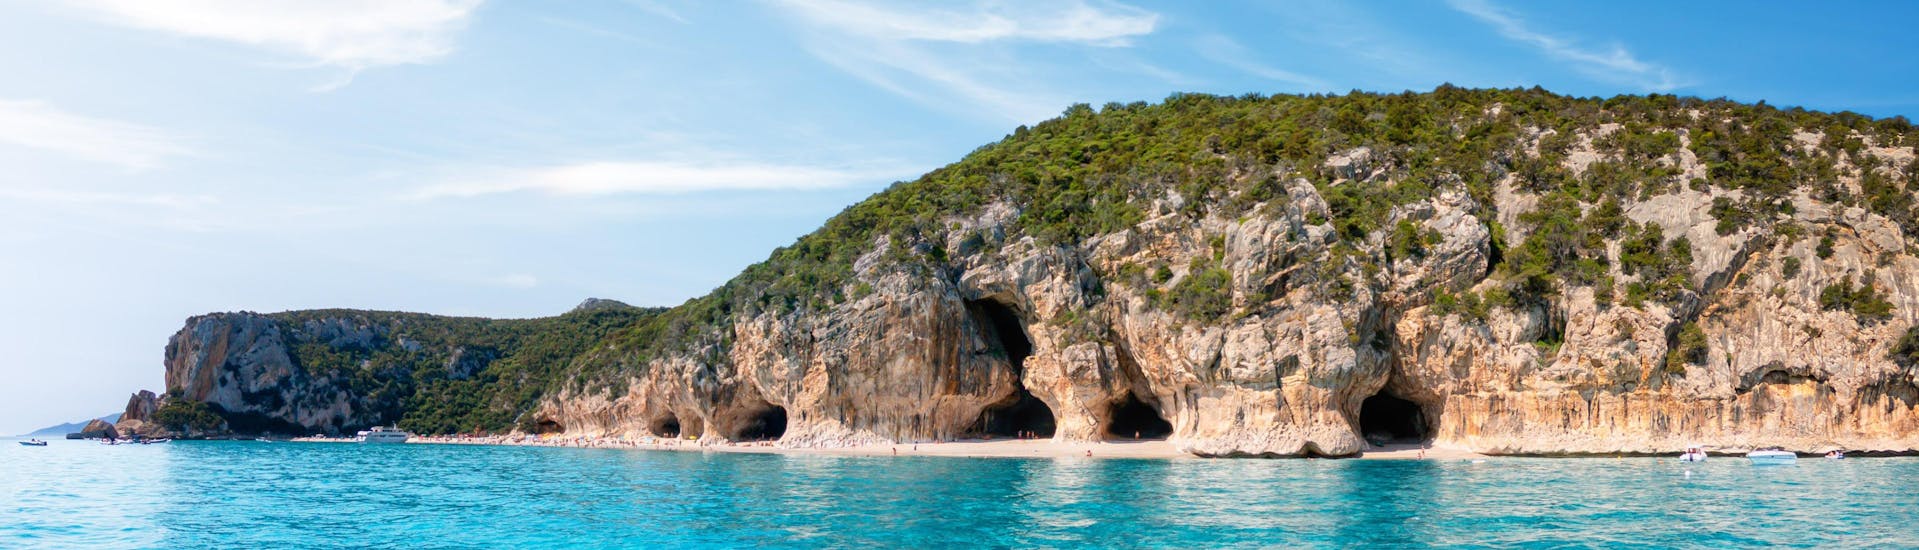 Imagen de las cuevas a lo largo de la costa de Cala Luna, Cerdeña, un destino popular para las excursiones en barco.